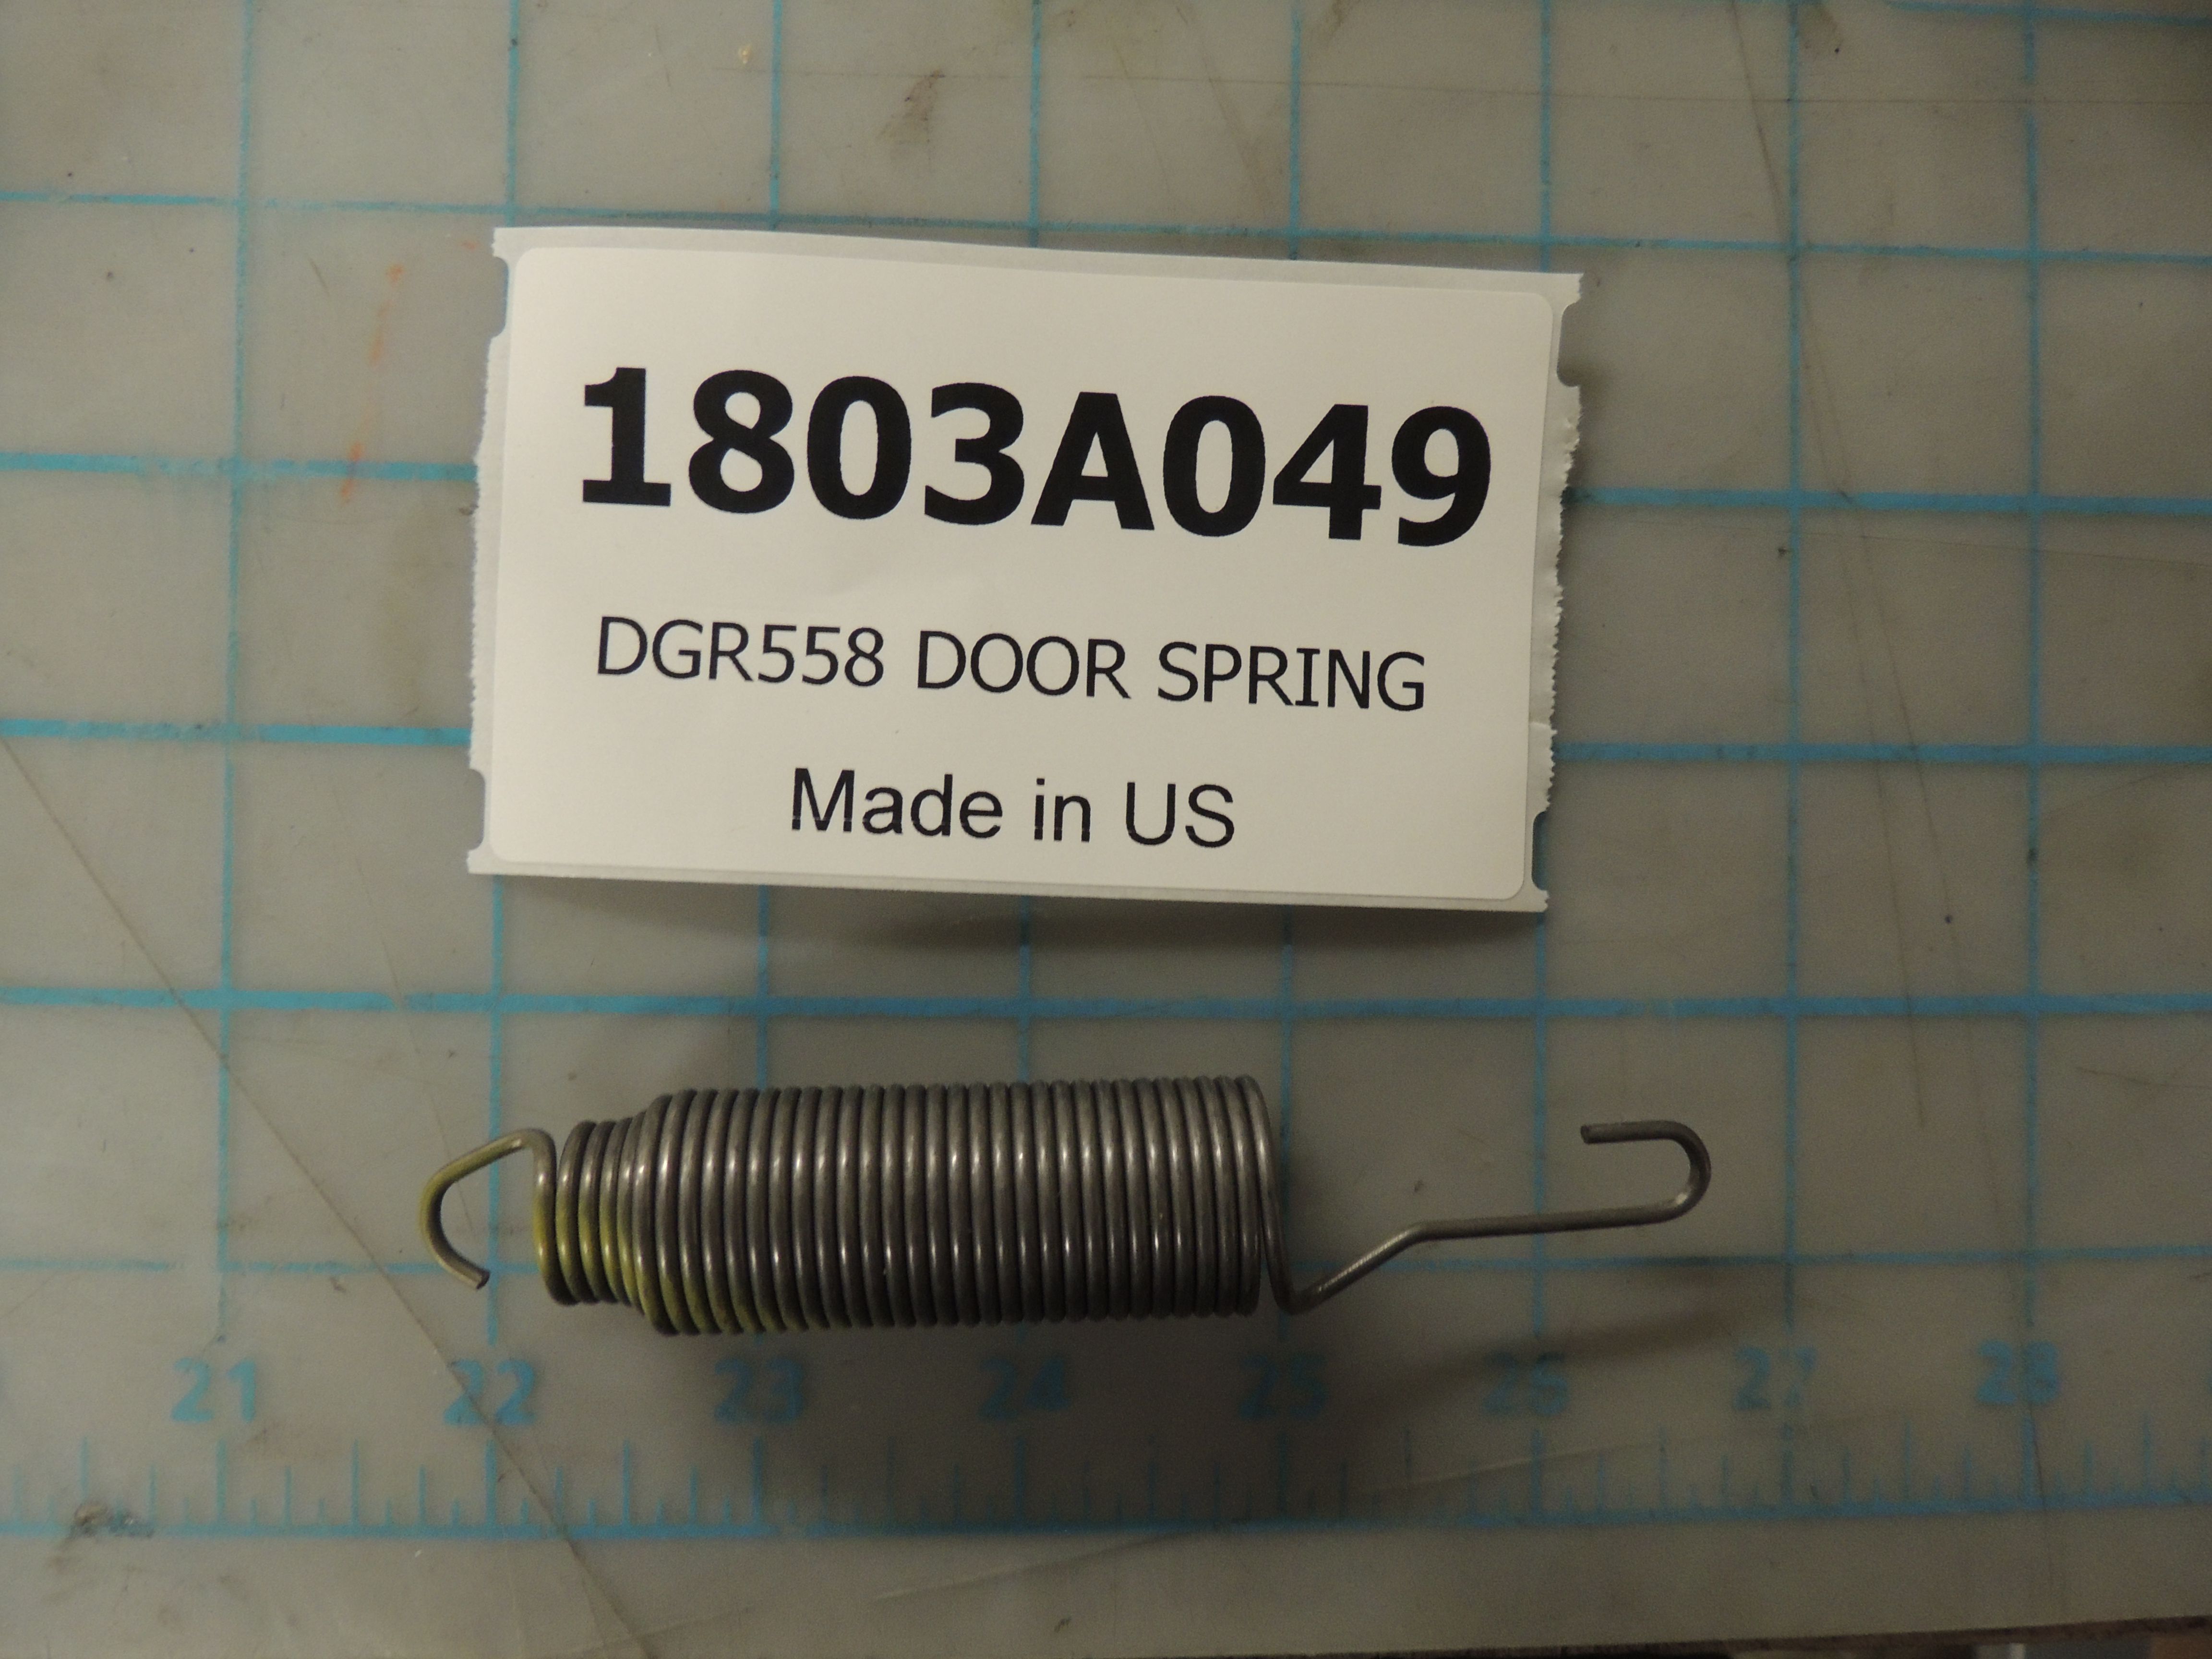 DGR558 DOOR SPRING